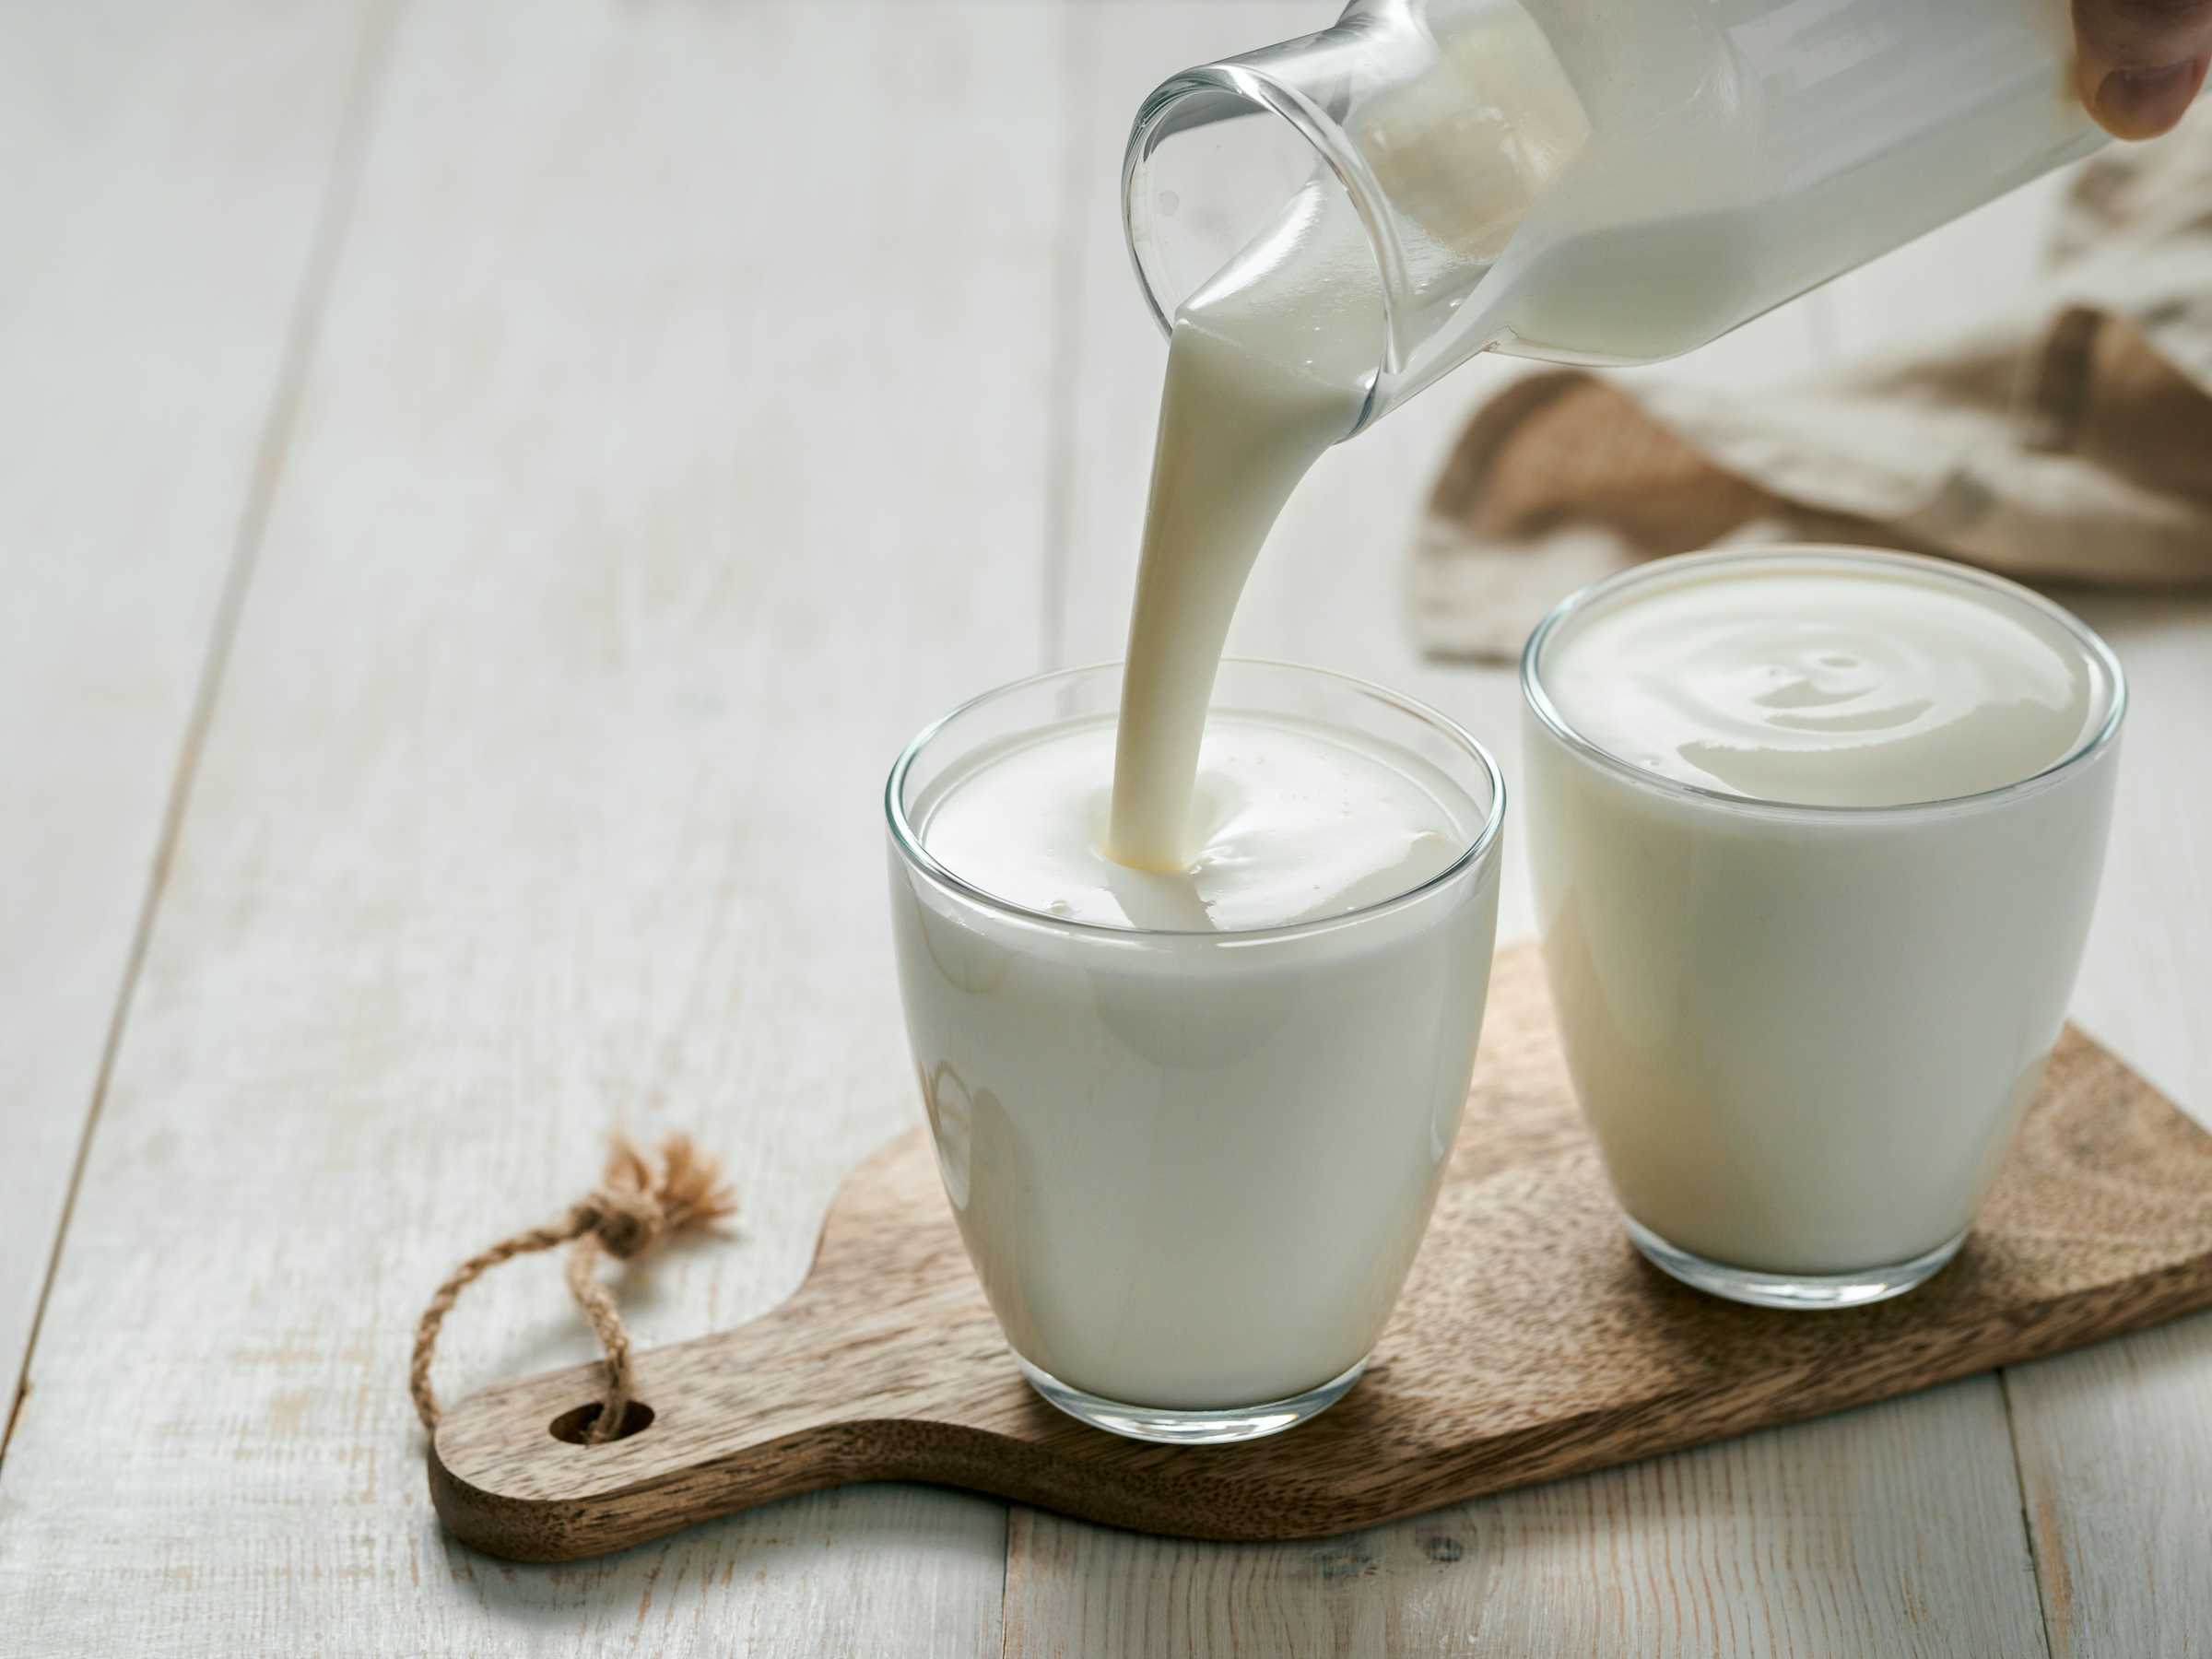 Usos de la leche curiosos y prácticos que te sorprenderán | Life -  ComputerHoy.com